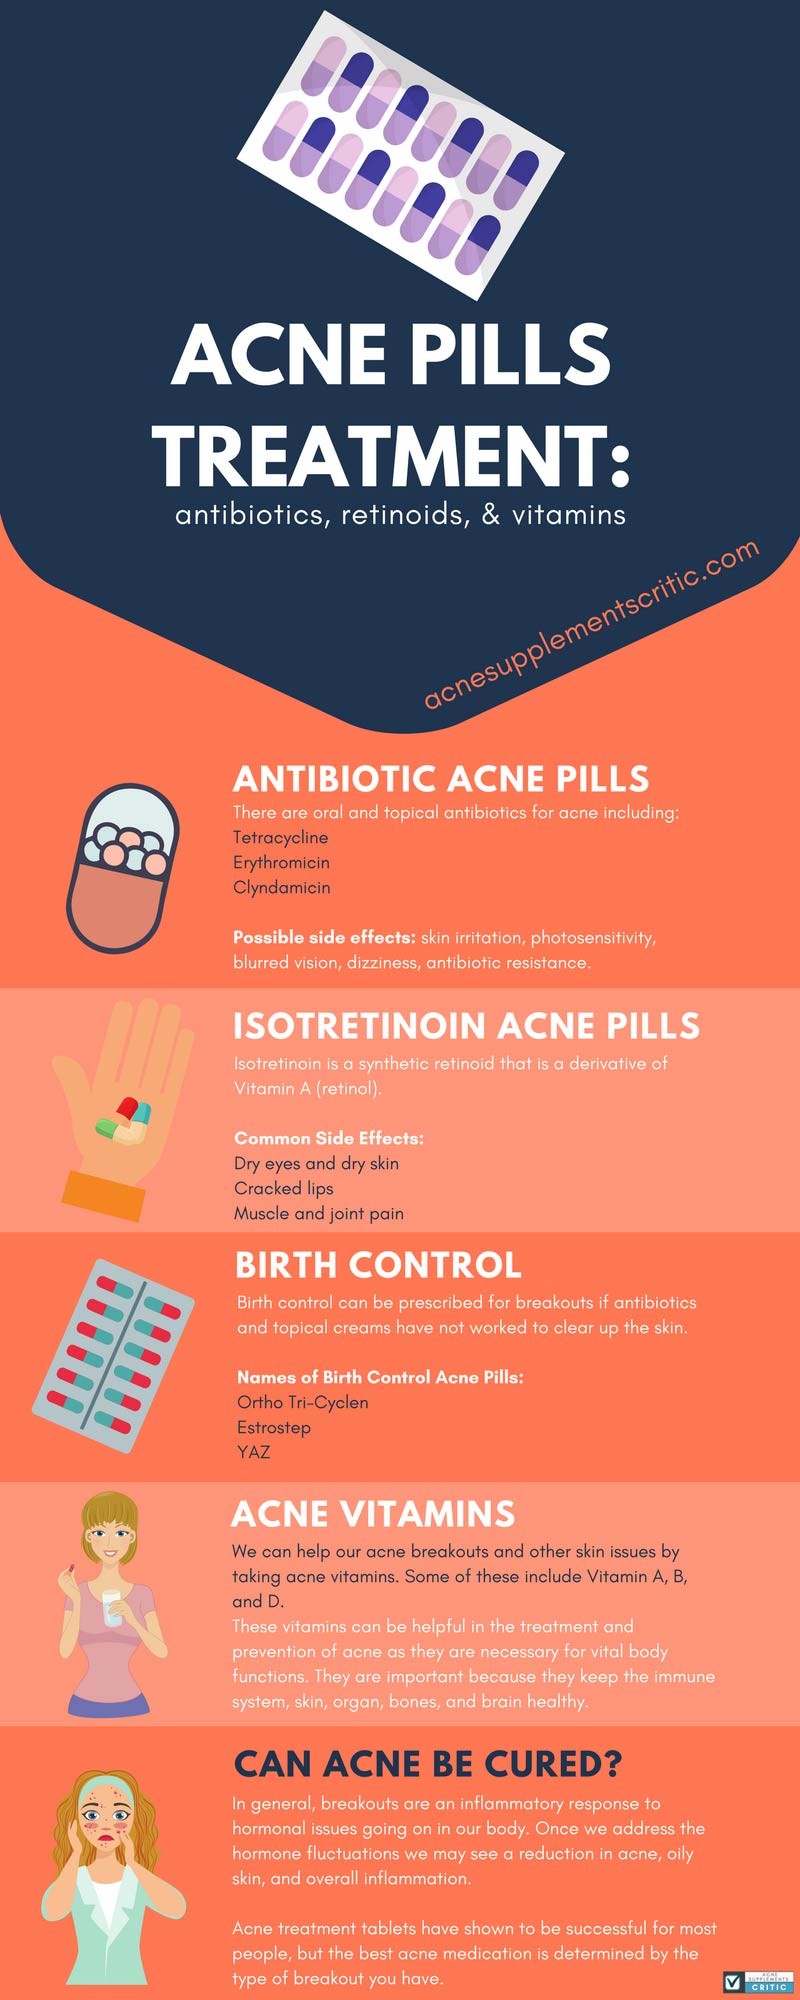 Acne Pills Treatment and Antibiotics, Retinoids, and Vitamins